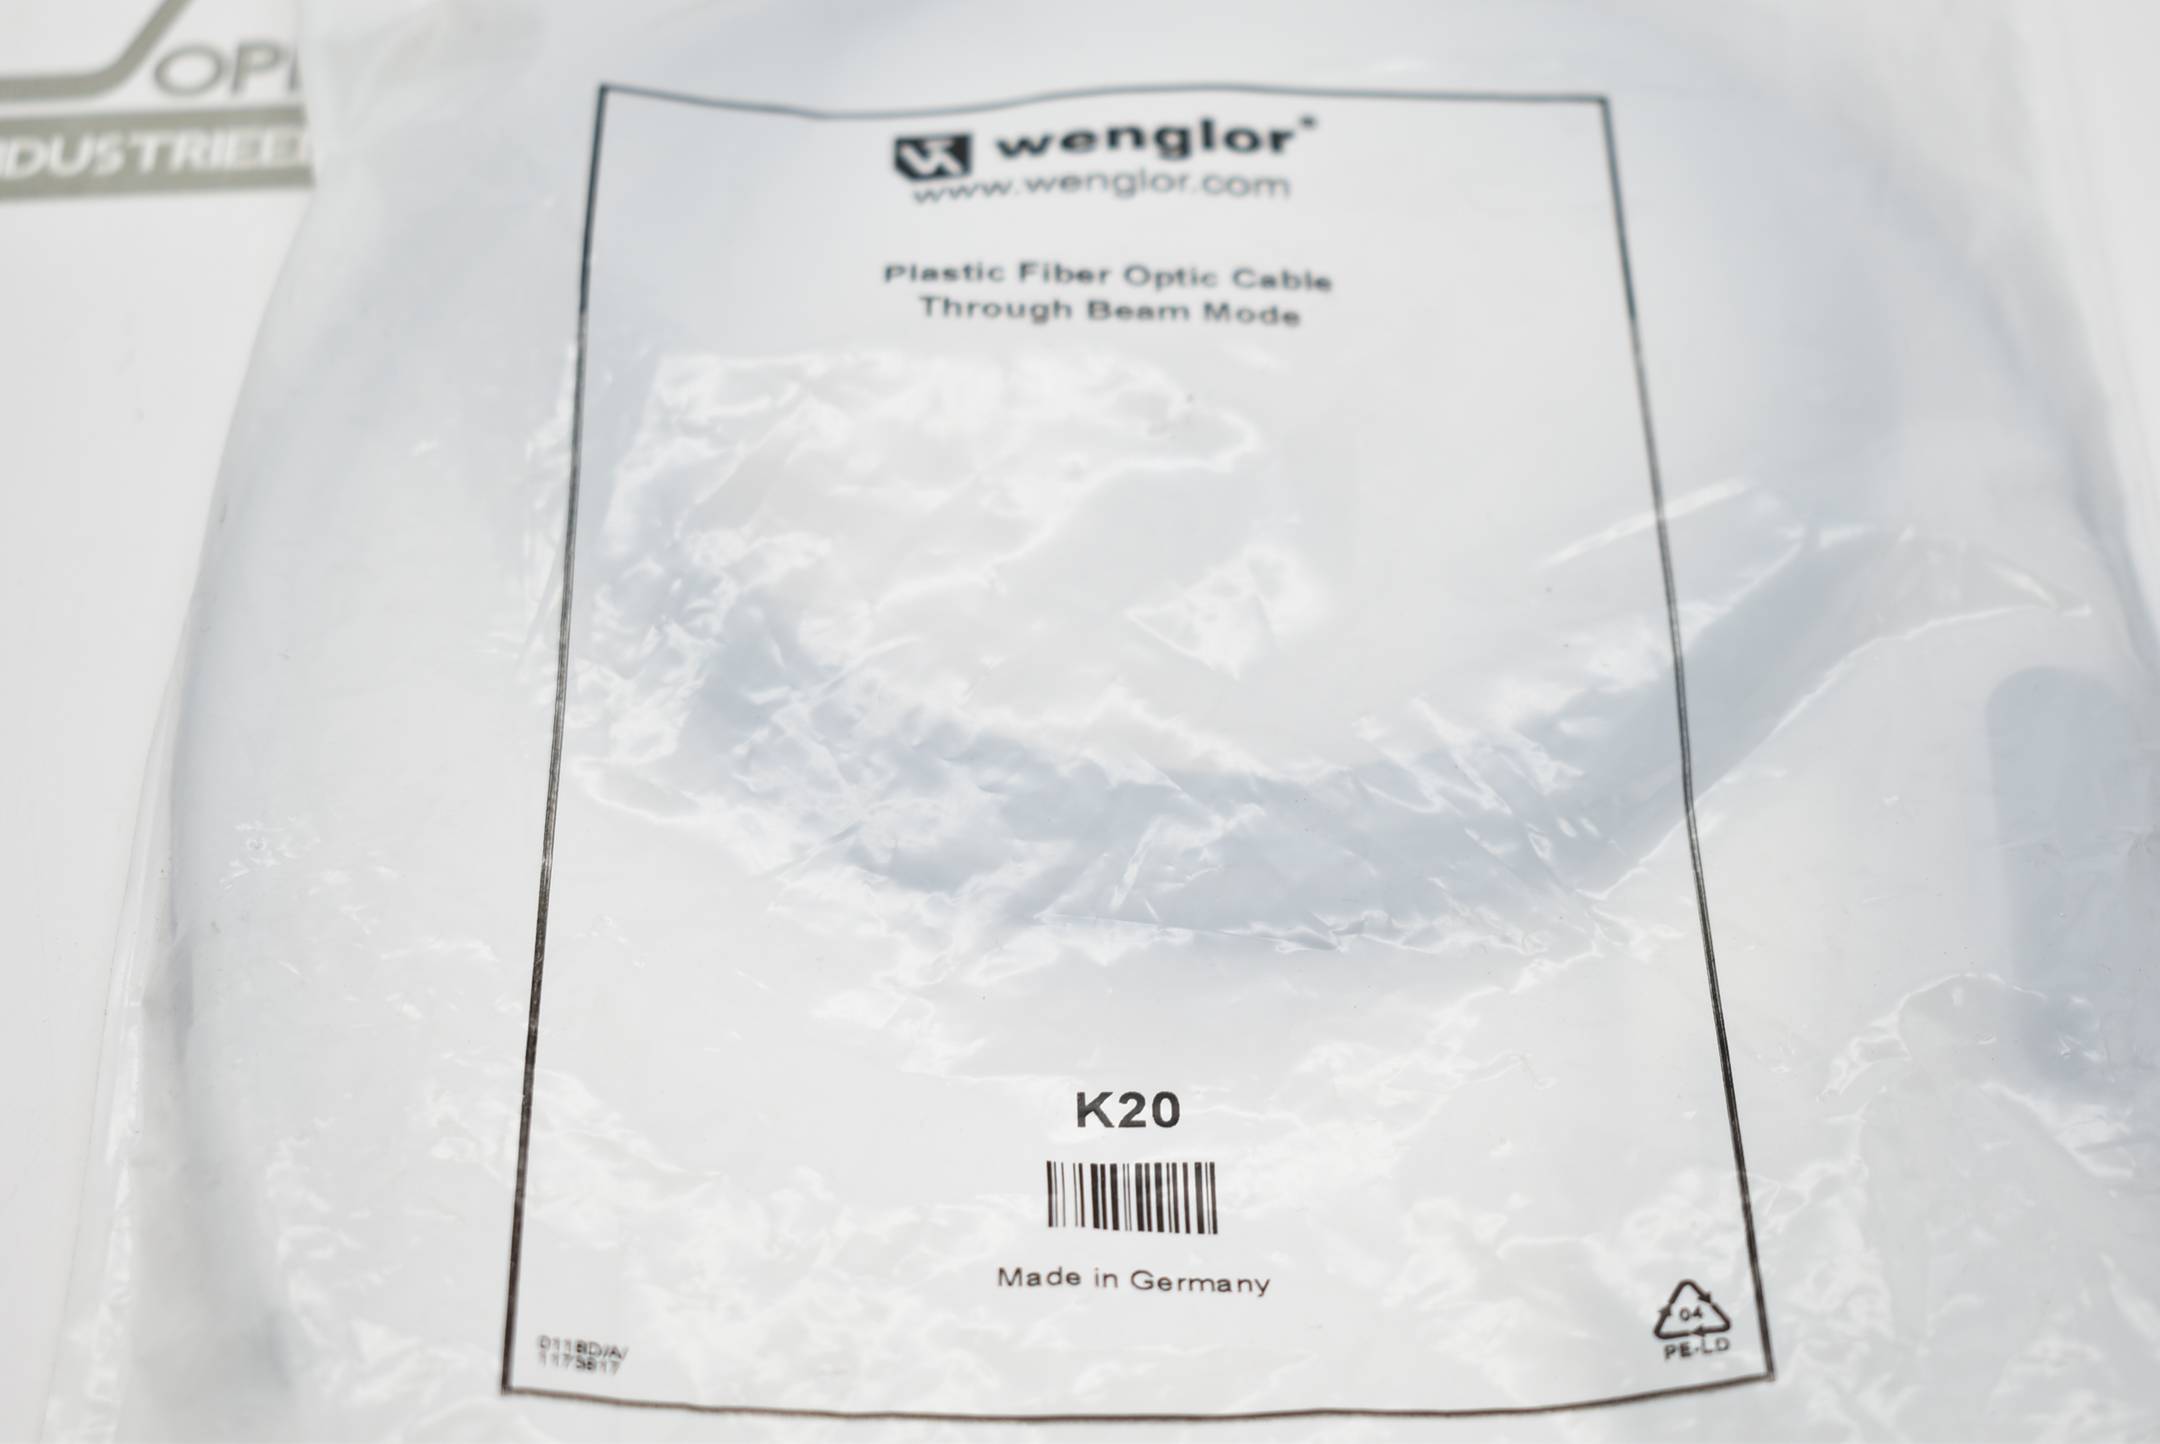 Wenglor Plastic Fiber Optic Cable Kunststofflichtleitkabel K20